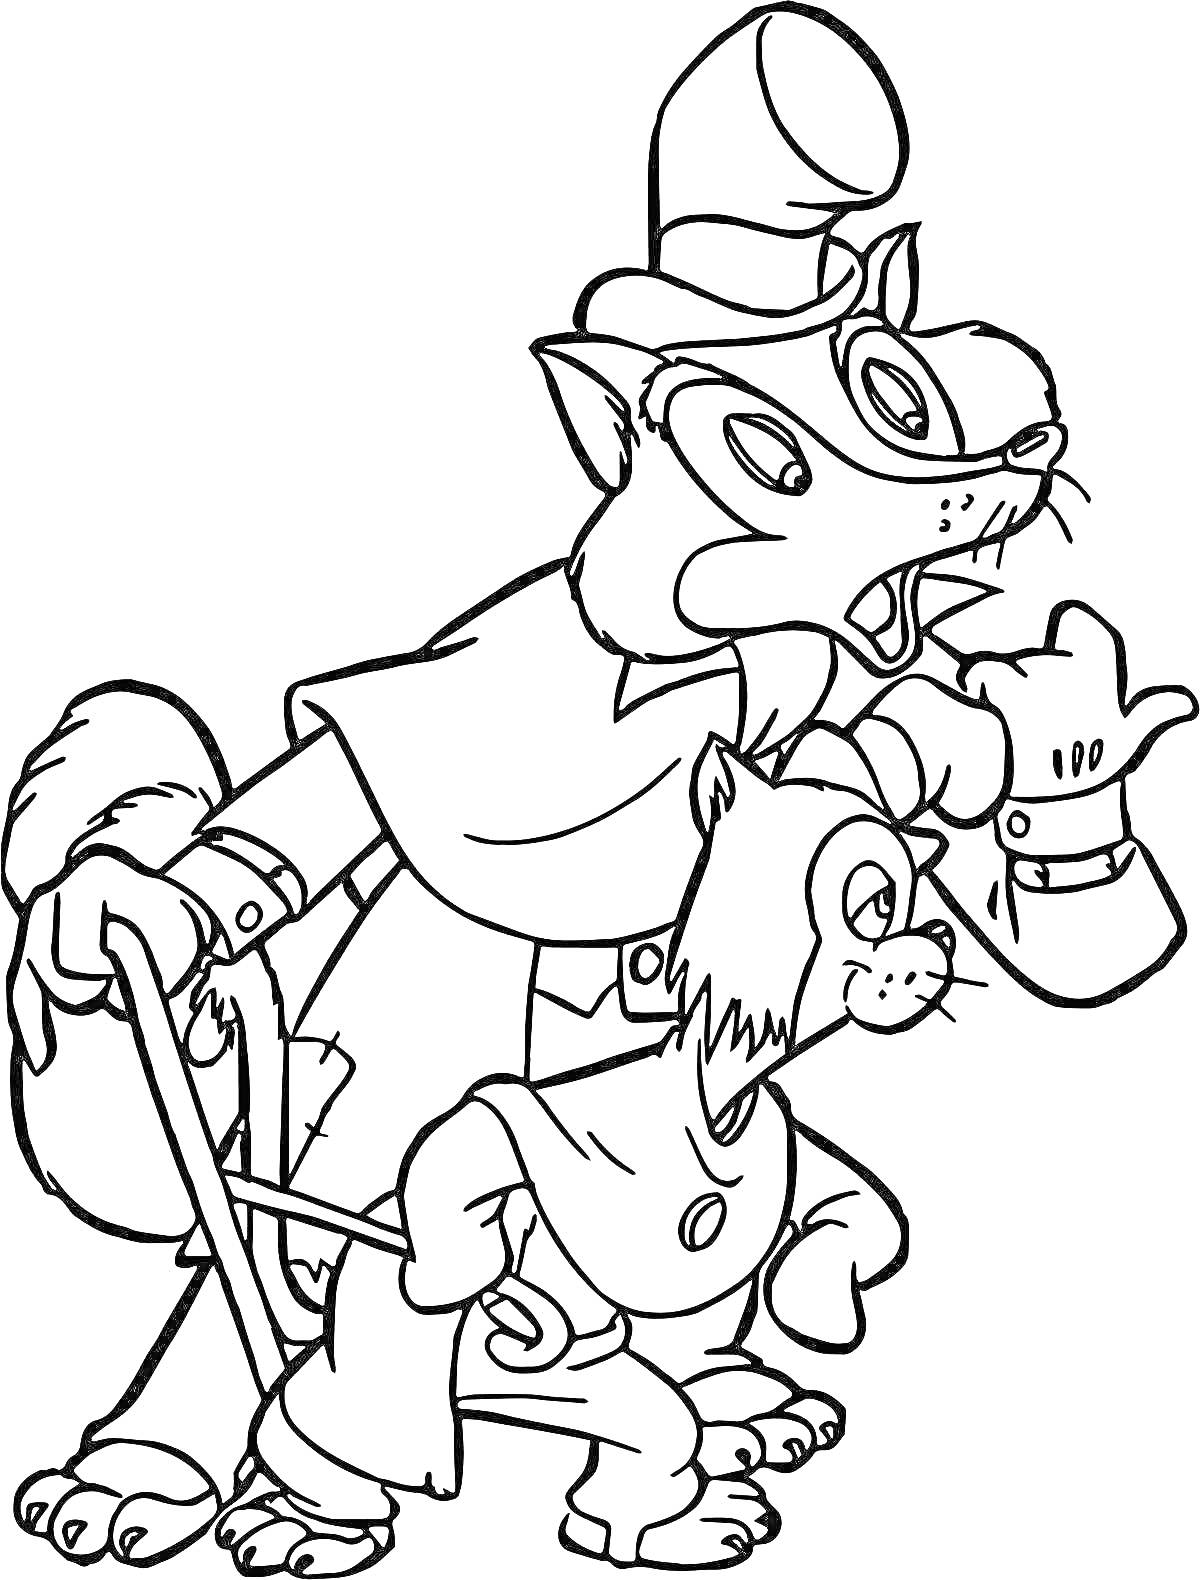 Раскраска Два кота в костюмах, один из которых носит шляпу и использует трость